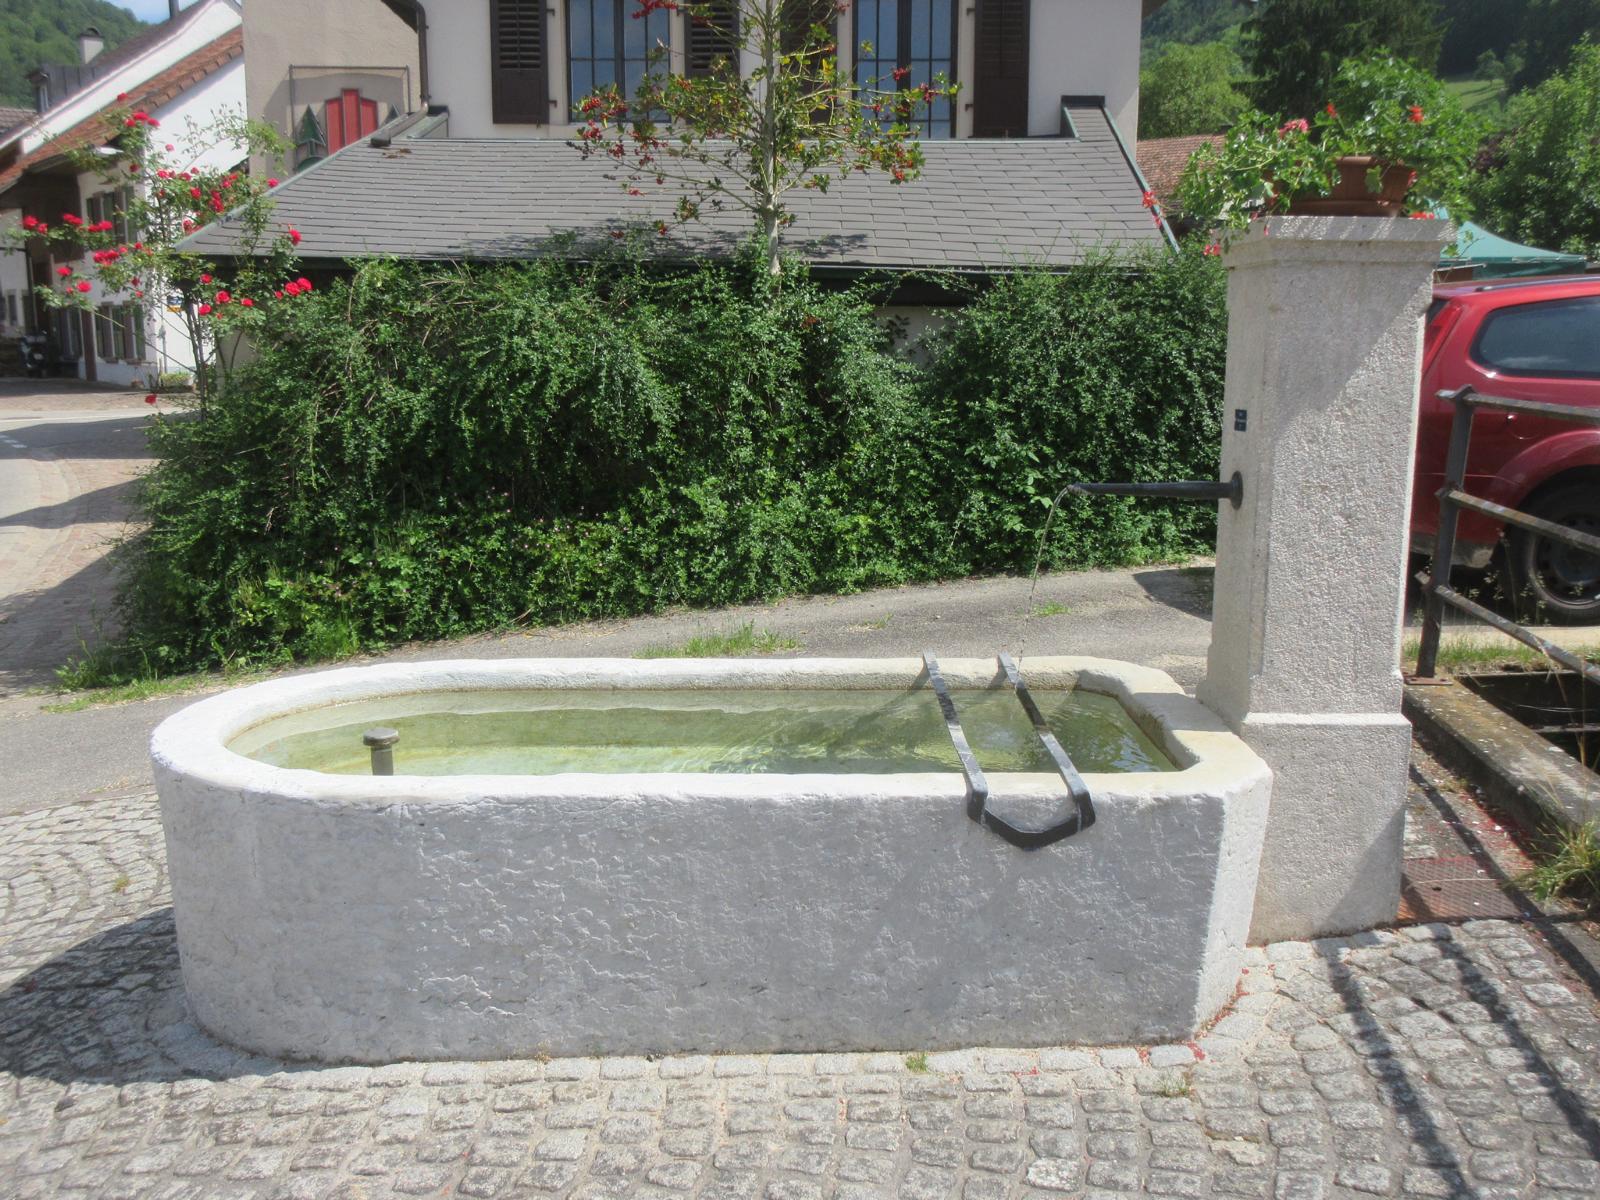 Rössligasse *** o.J. (19. Jh.); restauriert 2018 *** Jurakalk; monolithisches Becken 250 x 128 cm *** Kunststein *** "Kein Trinkwasser", Brunnen Nr. 7